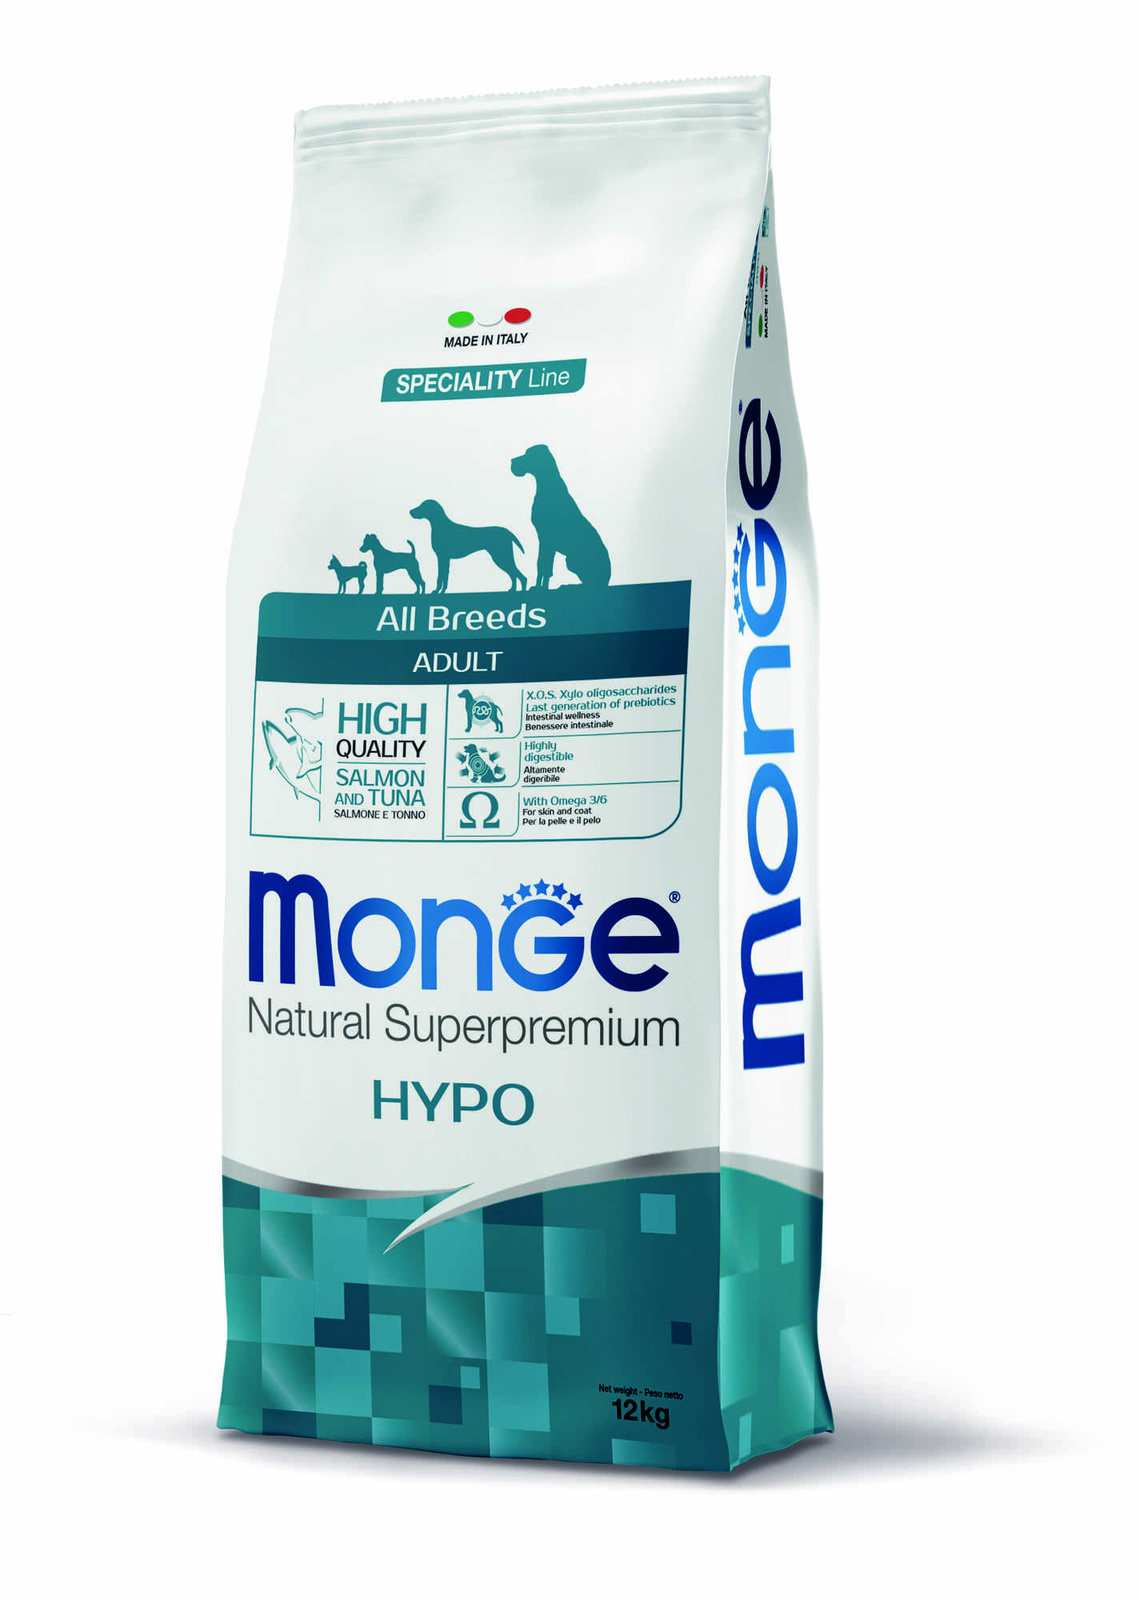 гипоаллергенный корм для собак всех пород, лосось с тунцом (12 кг) Monge гипоаллергенный корм для собак всех пород, лосось с тунцом (12 кг) - фото 2